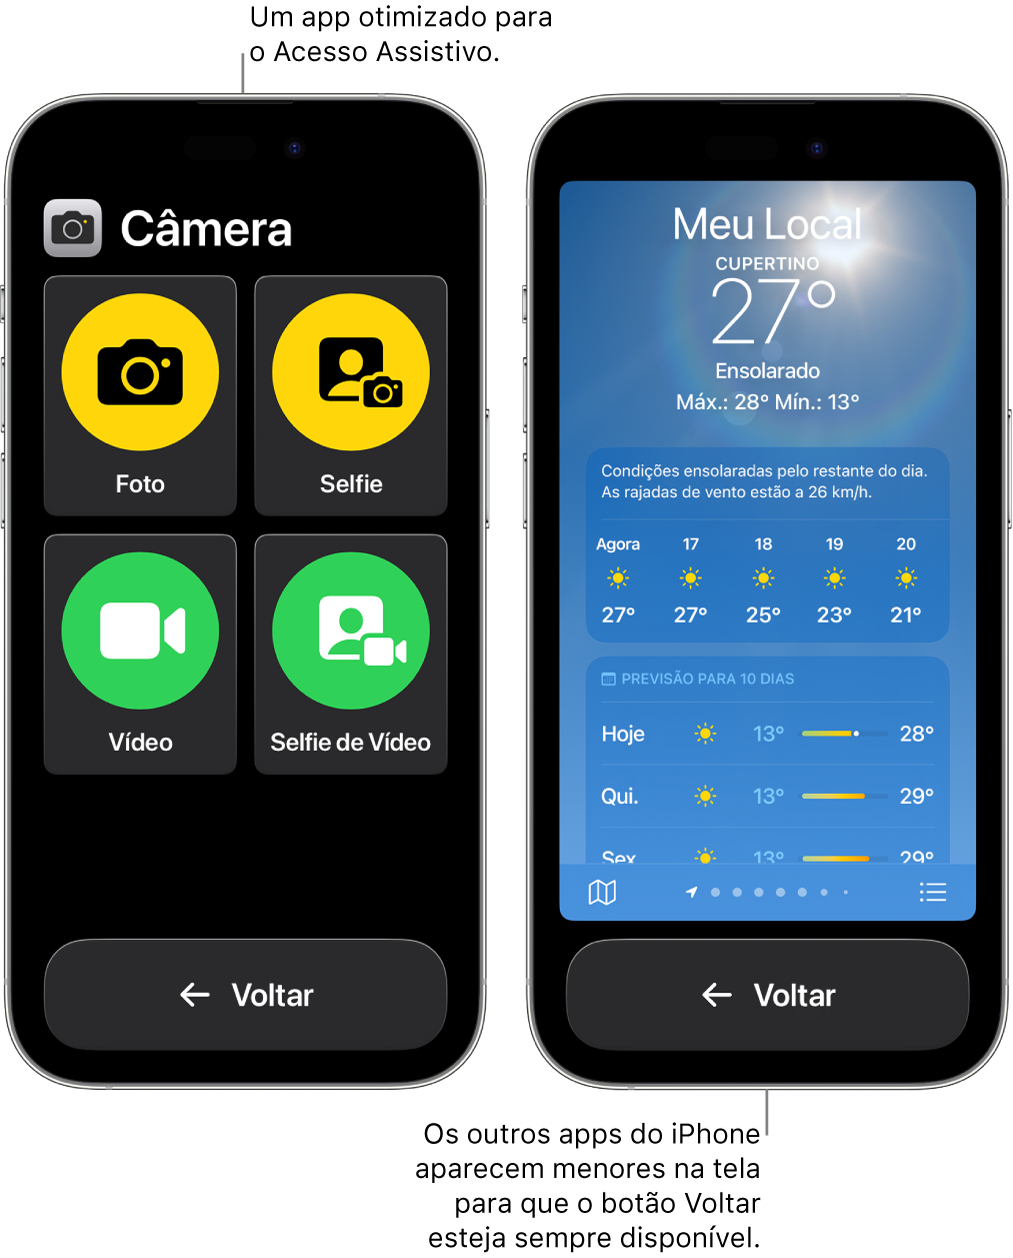 Dois iPhones no Acesso Assistivo. Um deles mostra um app criado para o Acesso Assistivo com uma grade ampla de botões. O outro mostra um app que não foi criado para o Acesso Assistivo, em seu formato original. Sua aparência é menor na tela, com um botão Voltar grande na parte inferior.